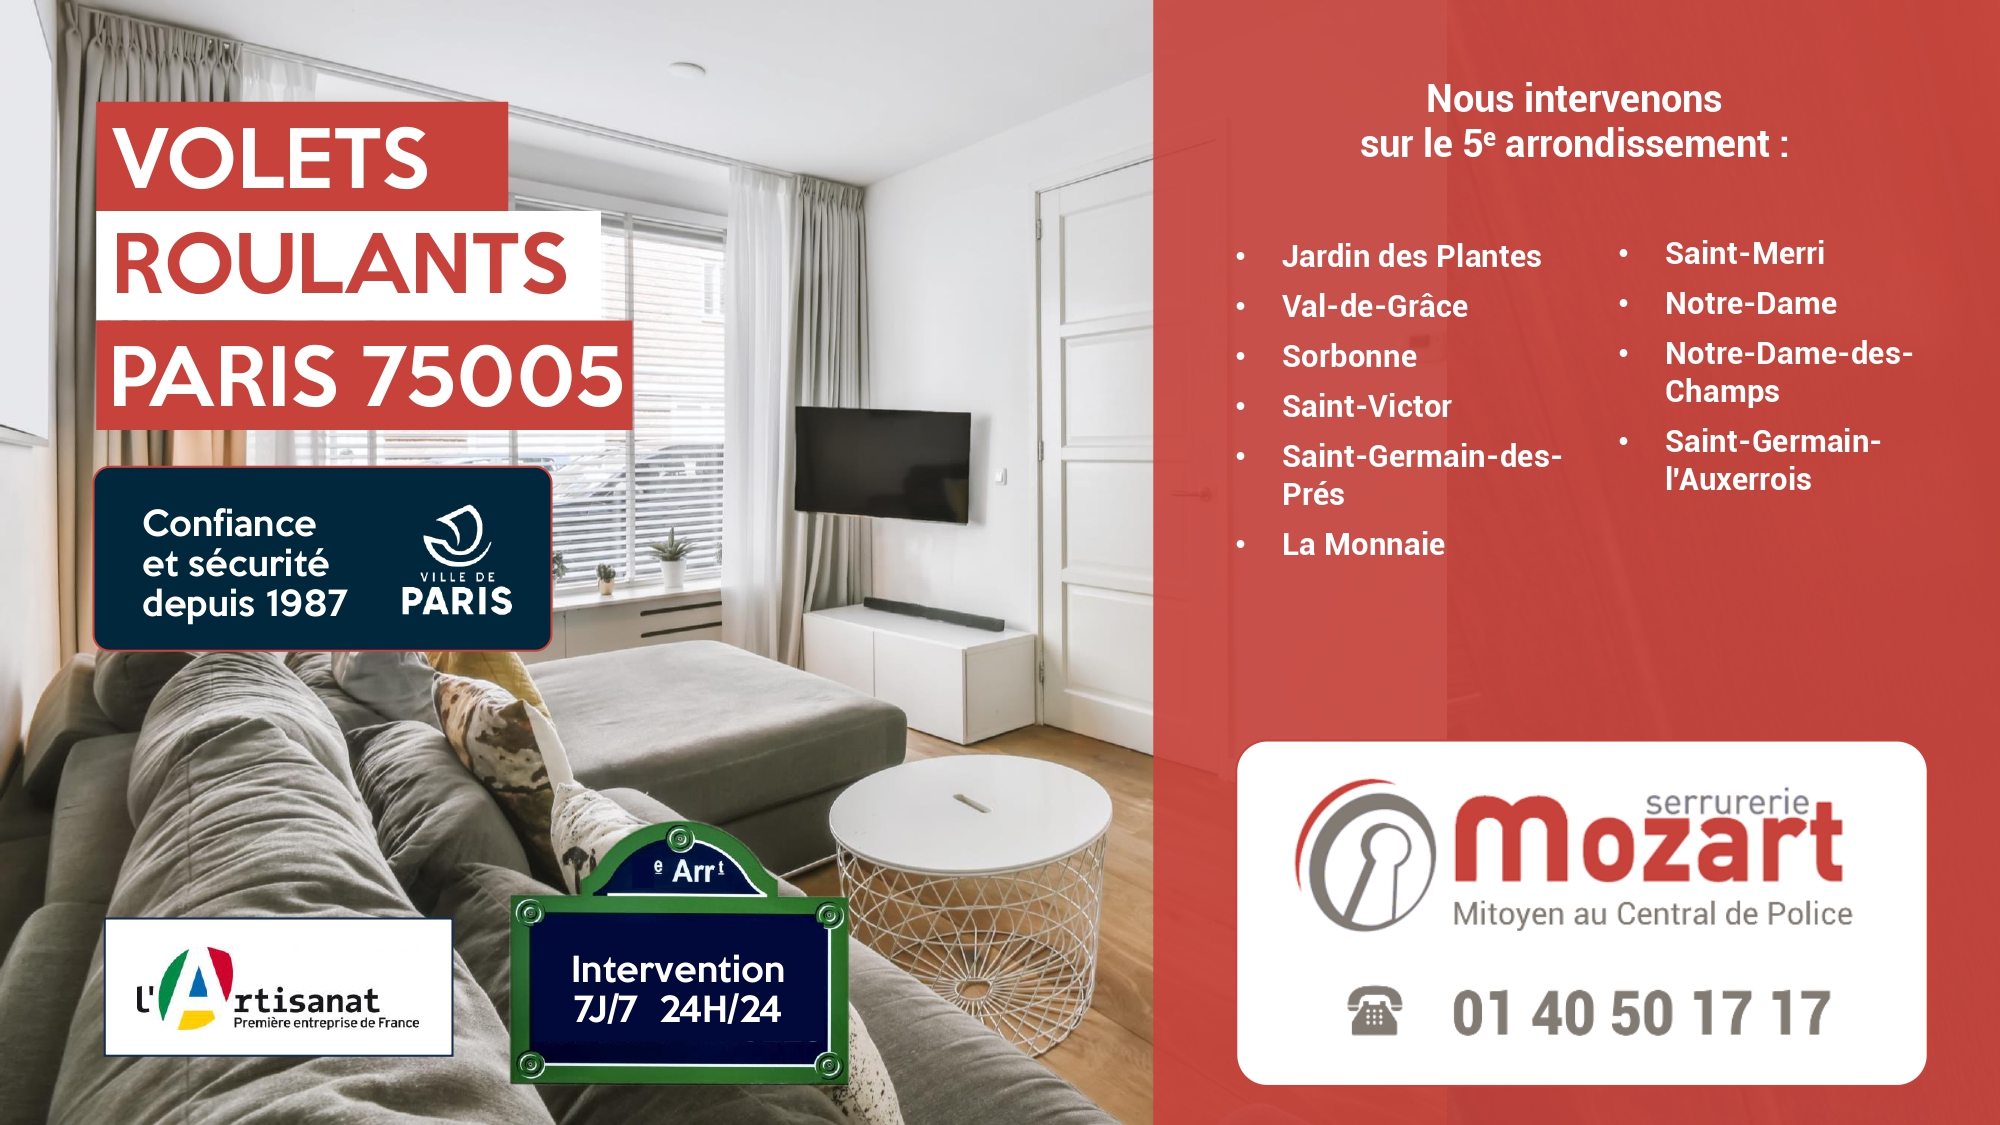 5ème arrondissement Paris - Serrurerie Mozart Volets Roulants - Rue Descartes - 01 40 50 17 17